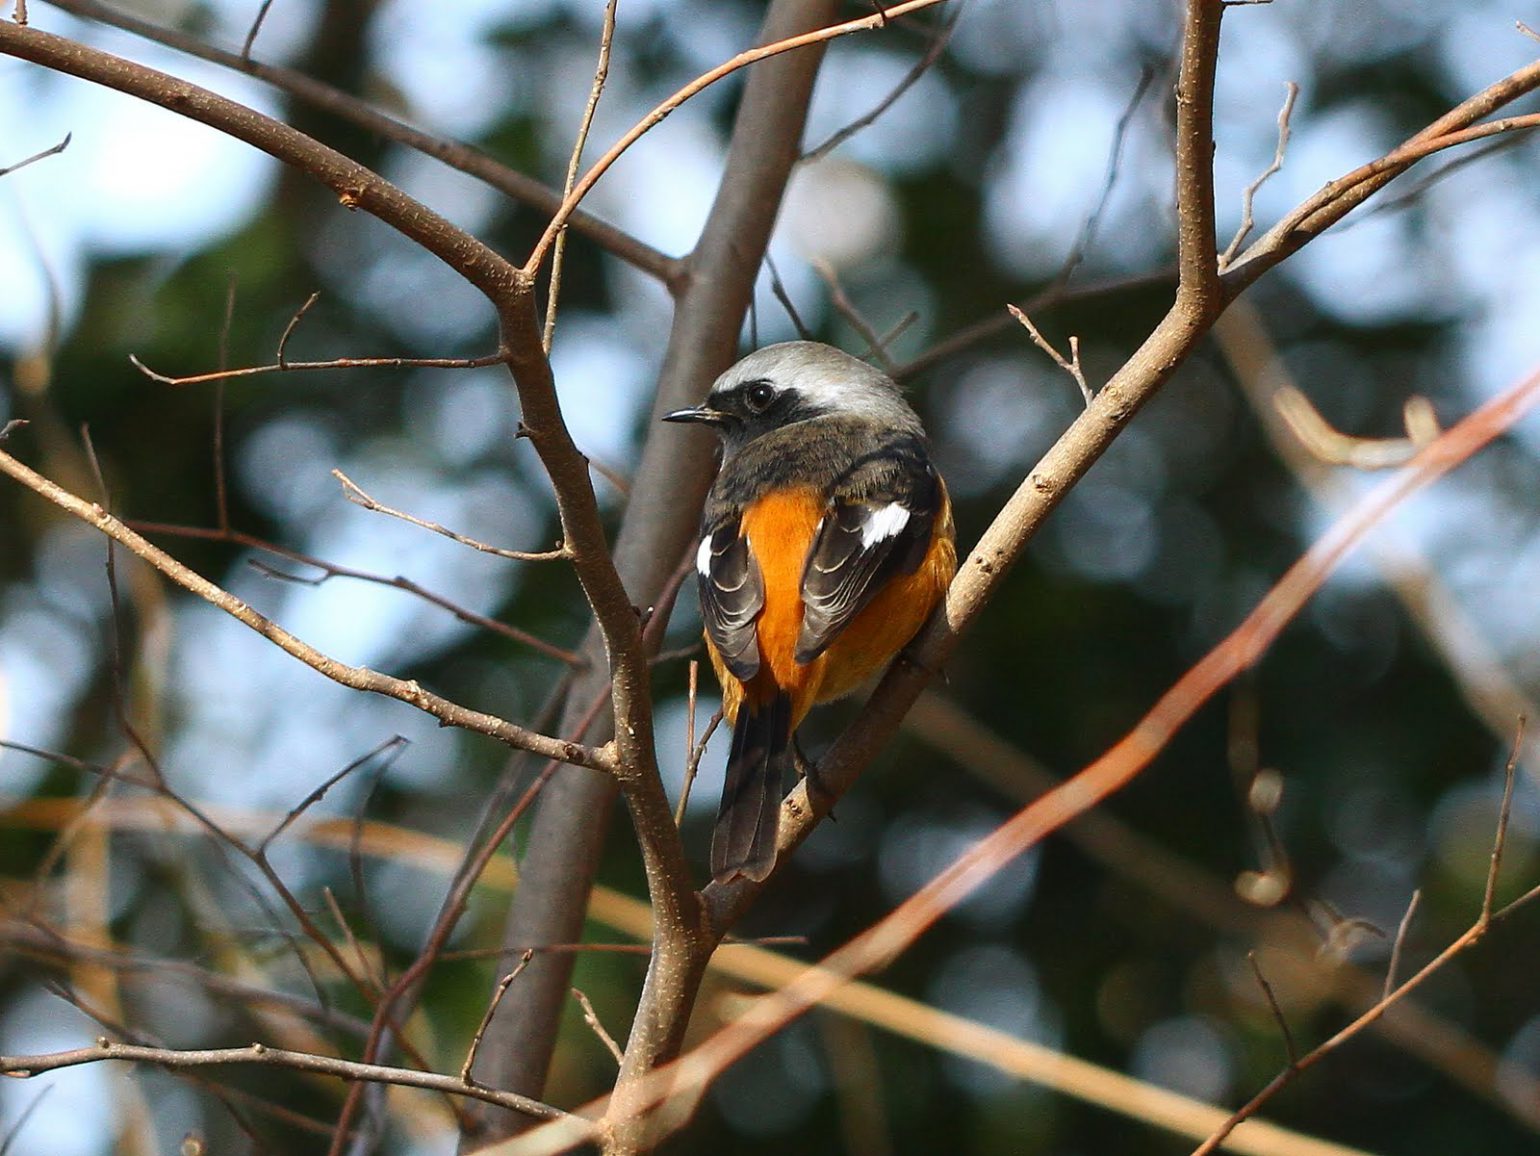 BORGで撮影した野鳥・ジョウビタキの写真画像